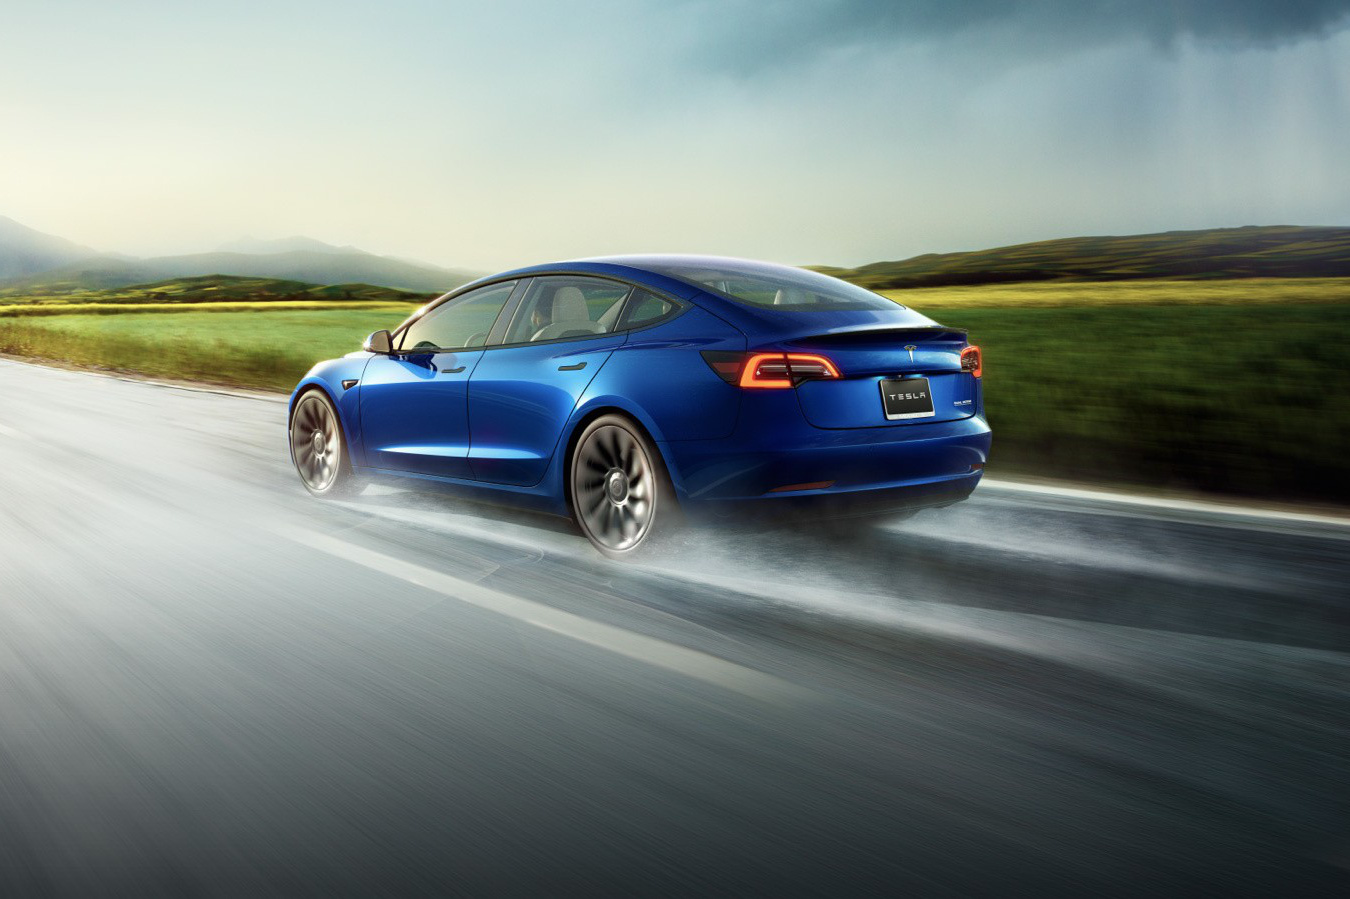 Khoe xe Tesla an toàn gấp 10 lần xe thường, Elon Musk bị bóc mẽ không thương tiếc